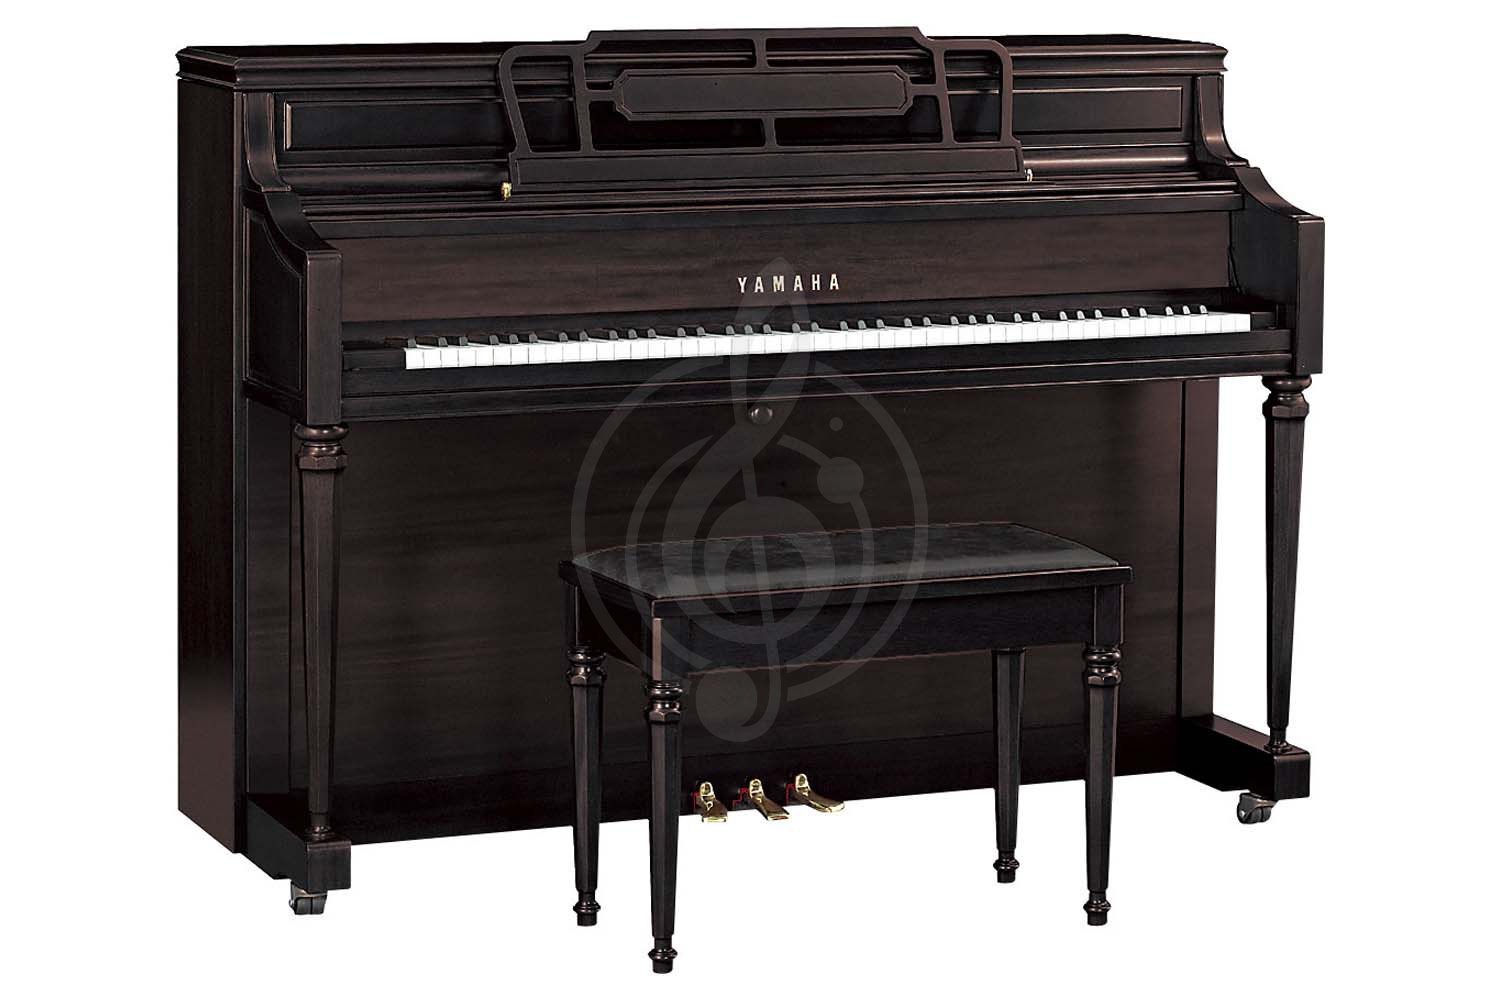 Акустическое пианино Пианино Yamaha Yamaha M2SBW - пианино 110см, консольного типа, цвет чёрный орех, сатинированное, с банкеткой M2SBW//LZ.WITHBENCH - фото 1